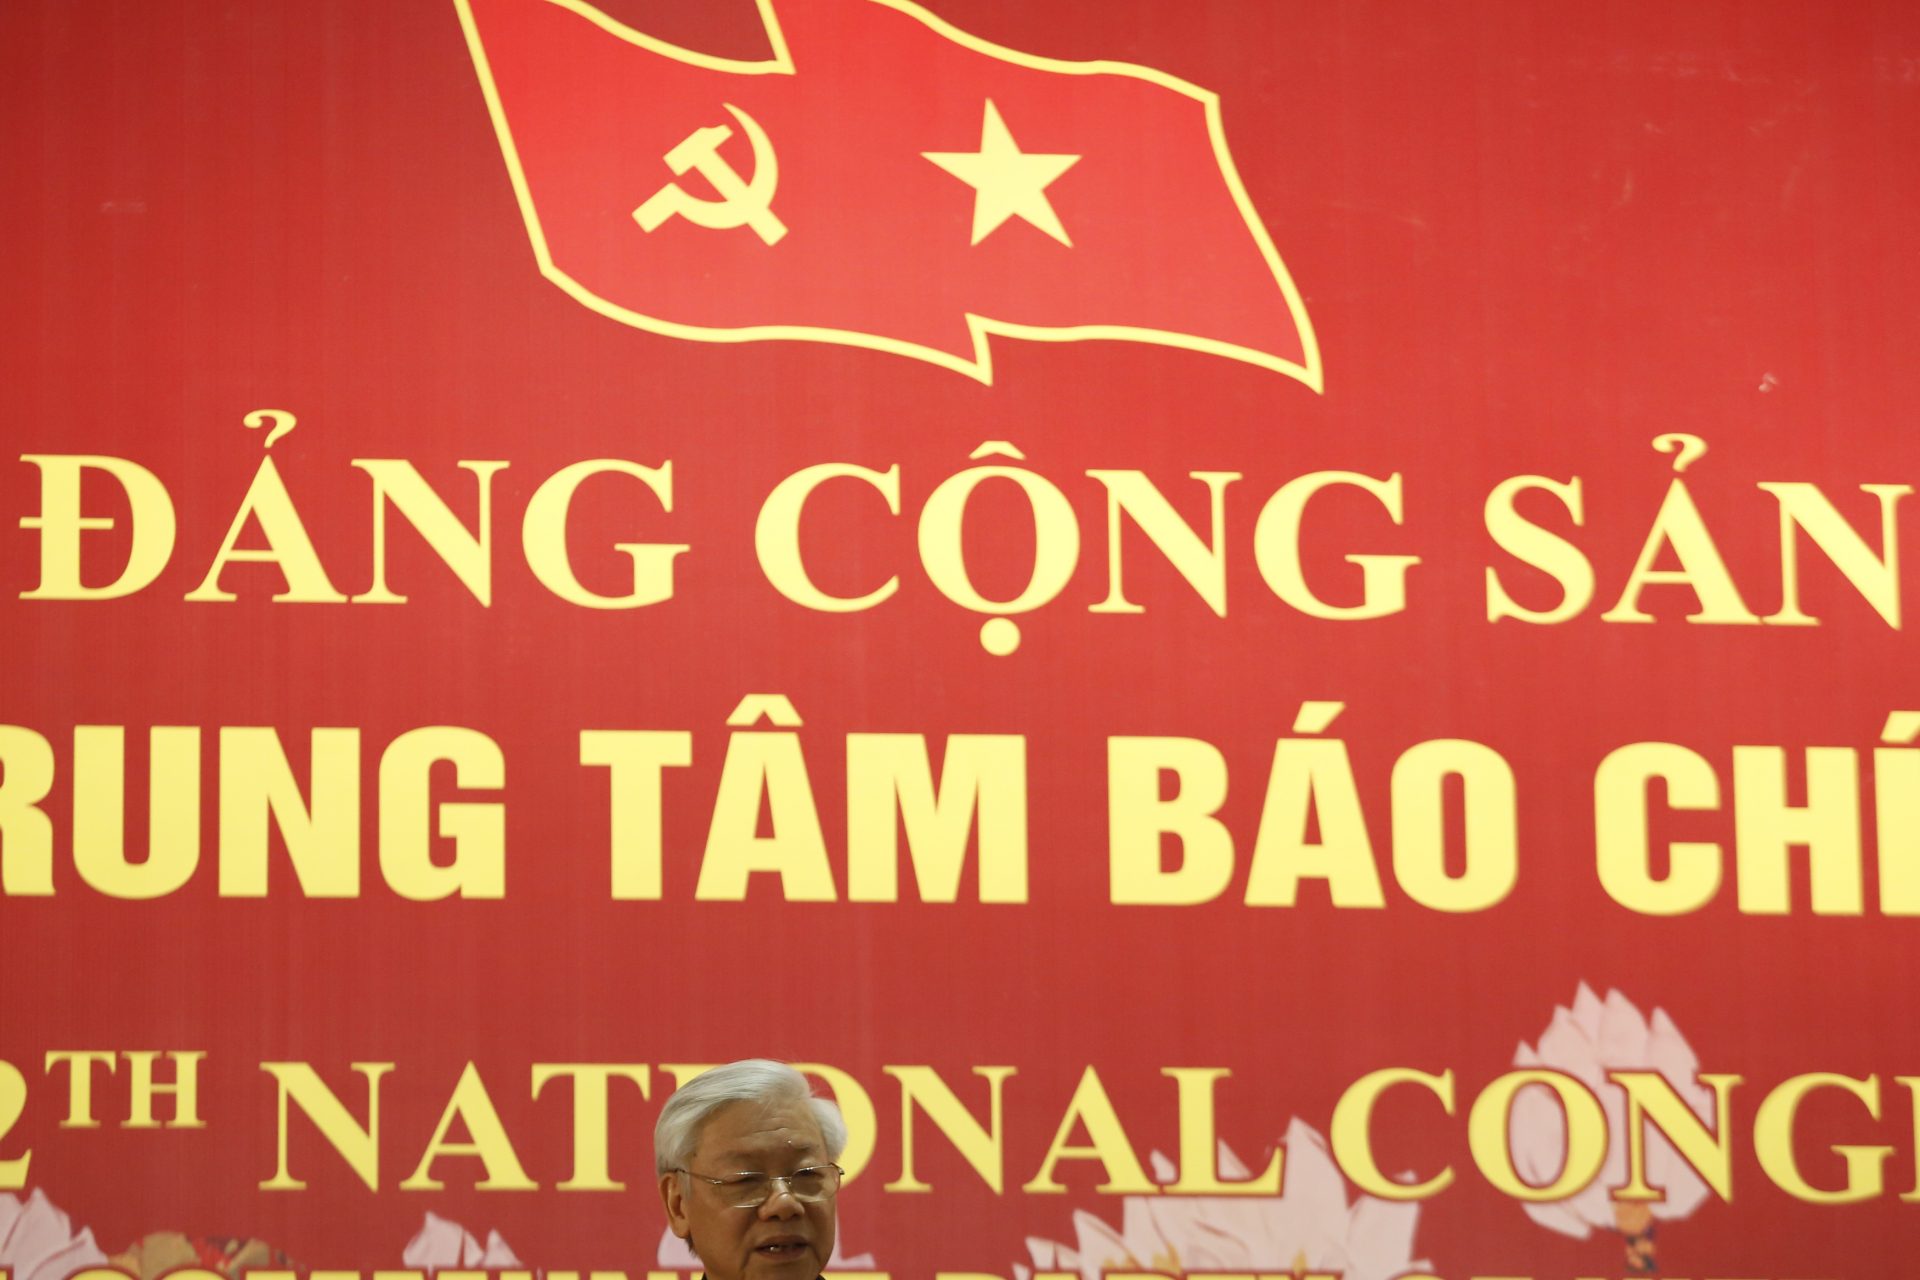 Die Kontrolle über Saigon: politische und wirtschaftliche Strategien in Vietnam